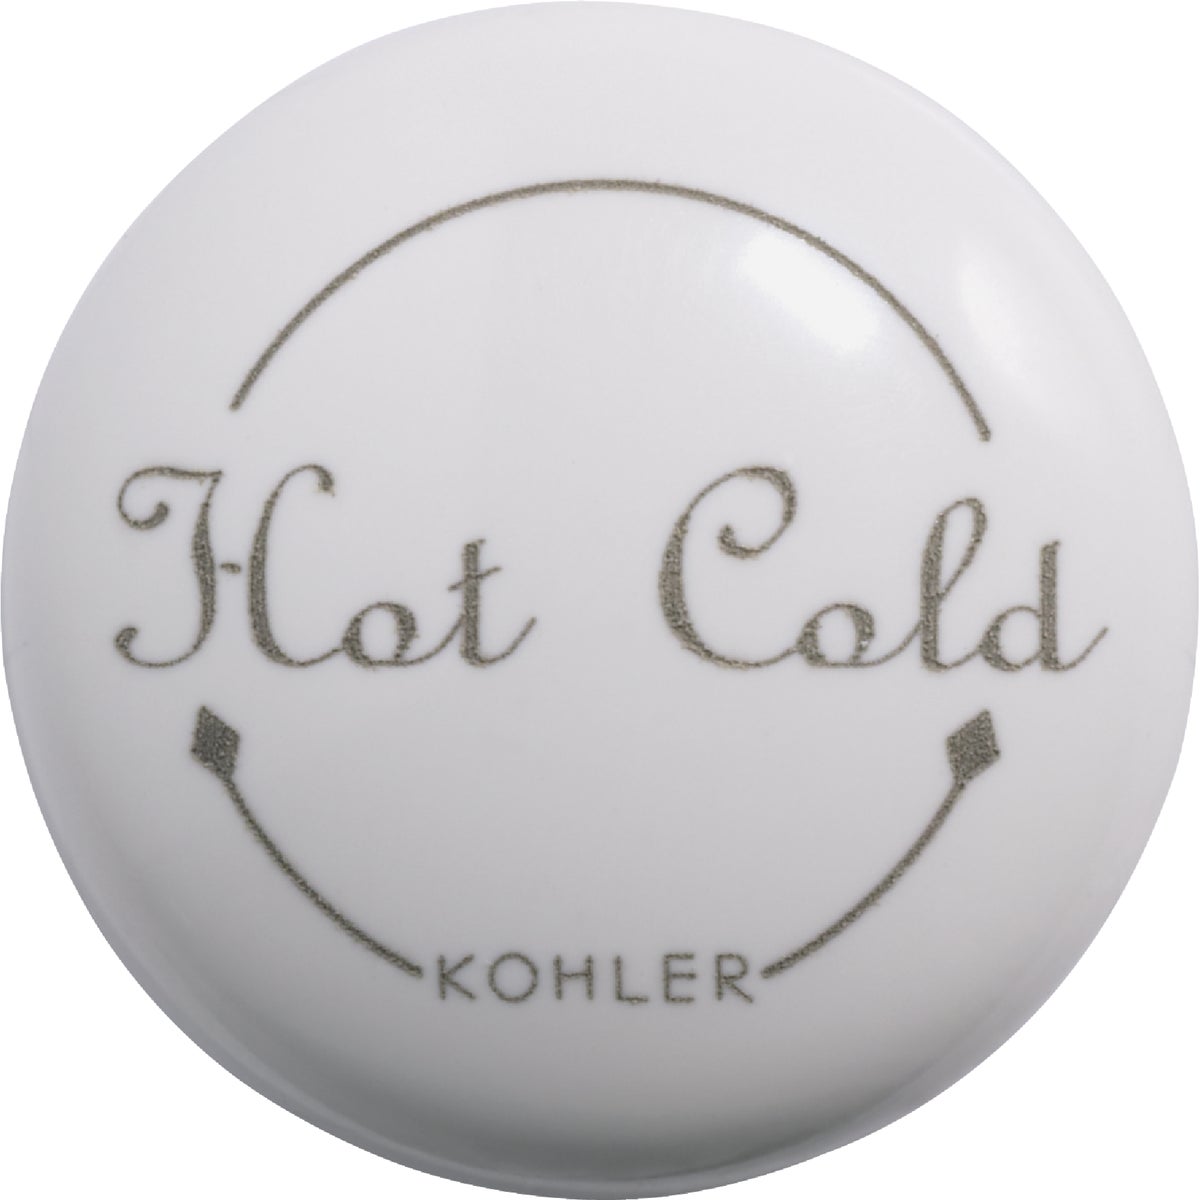 Kohler Fairfax White Single Handle Button